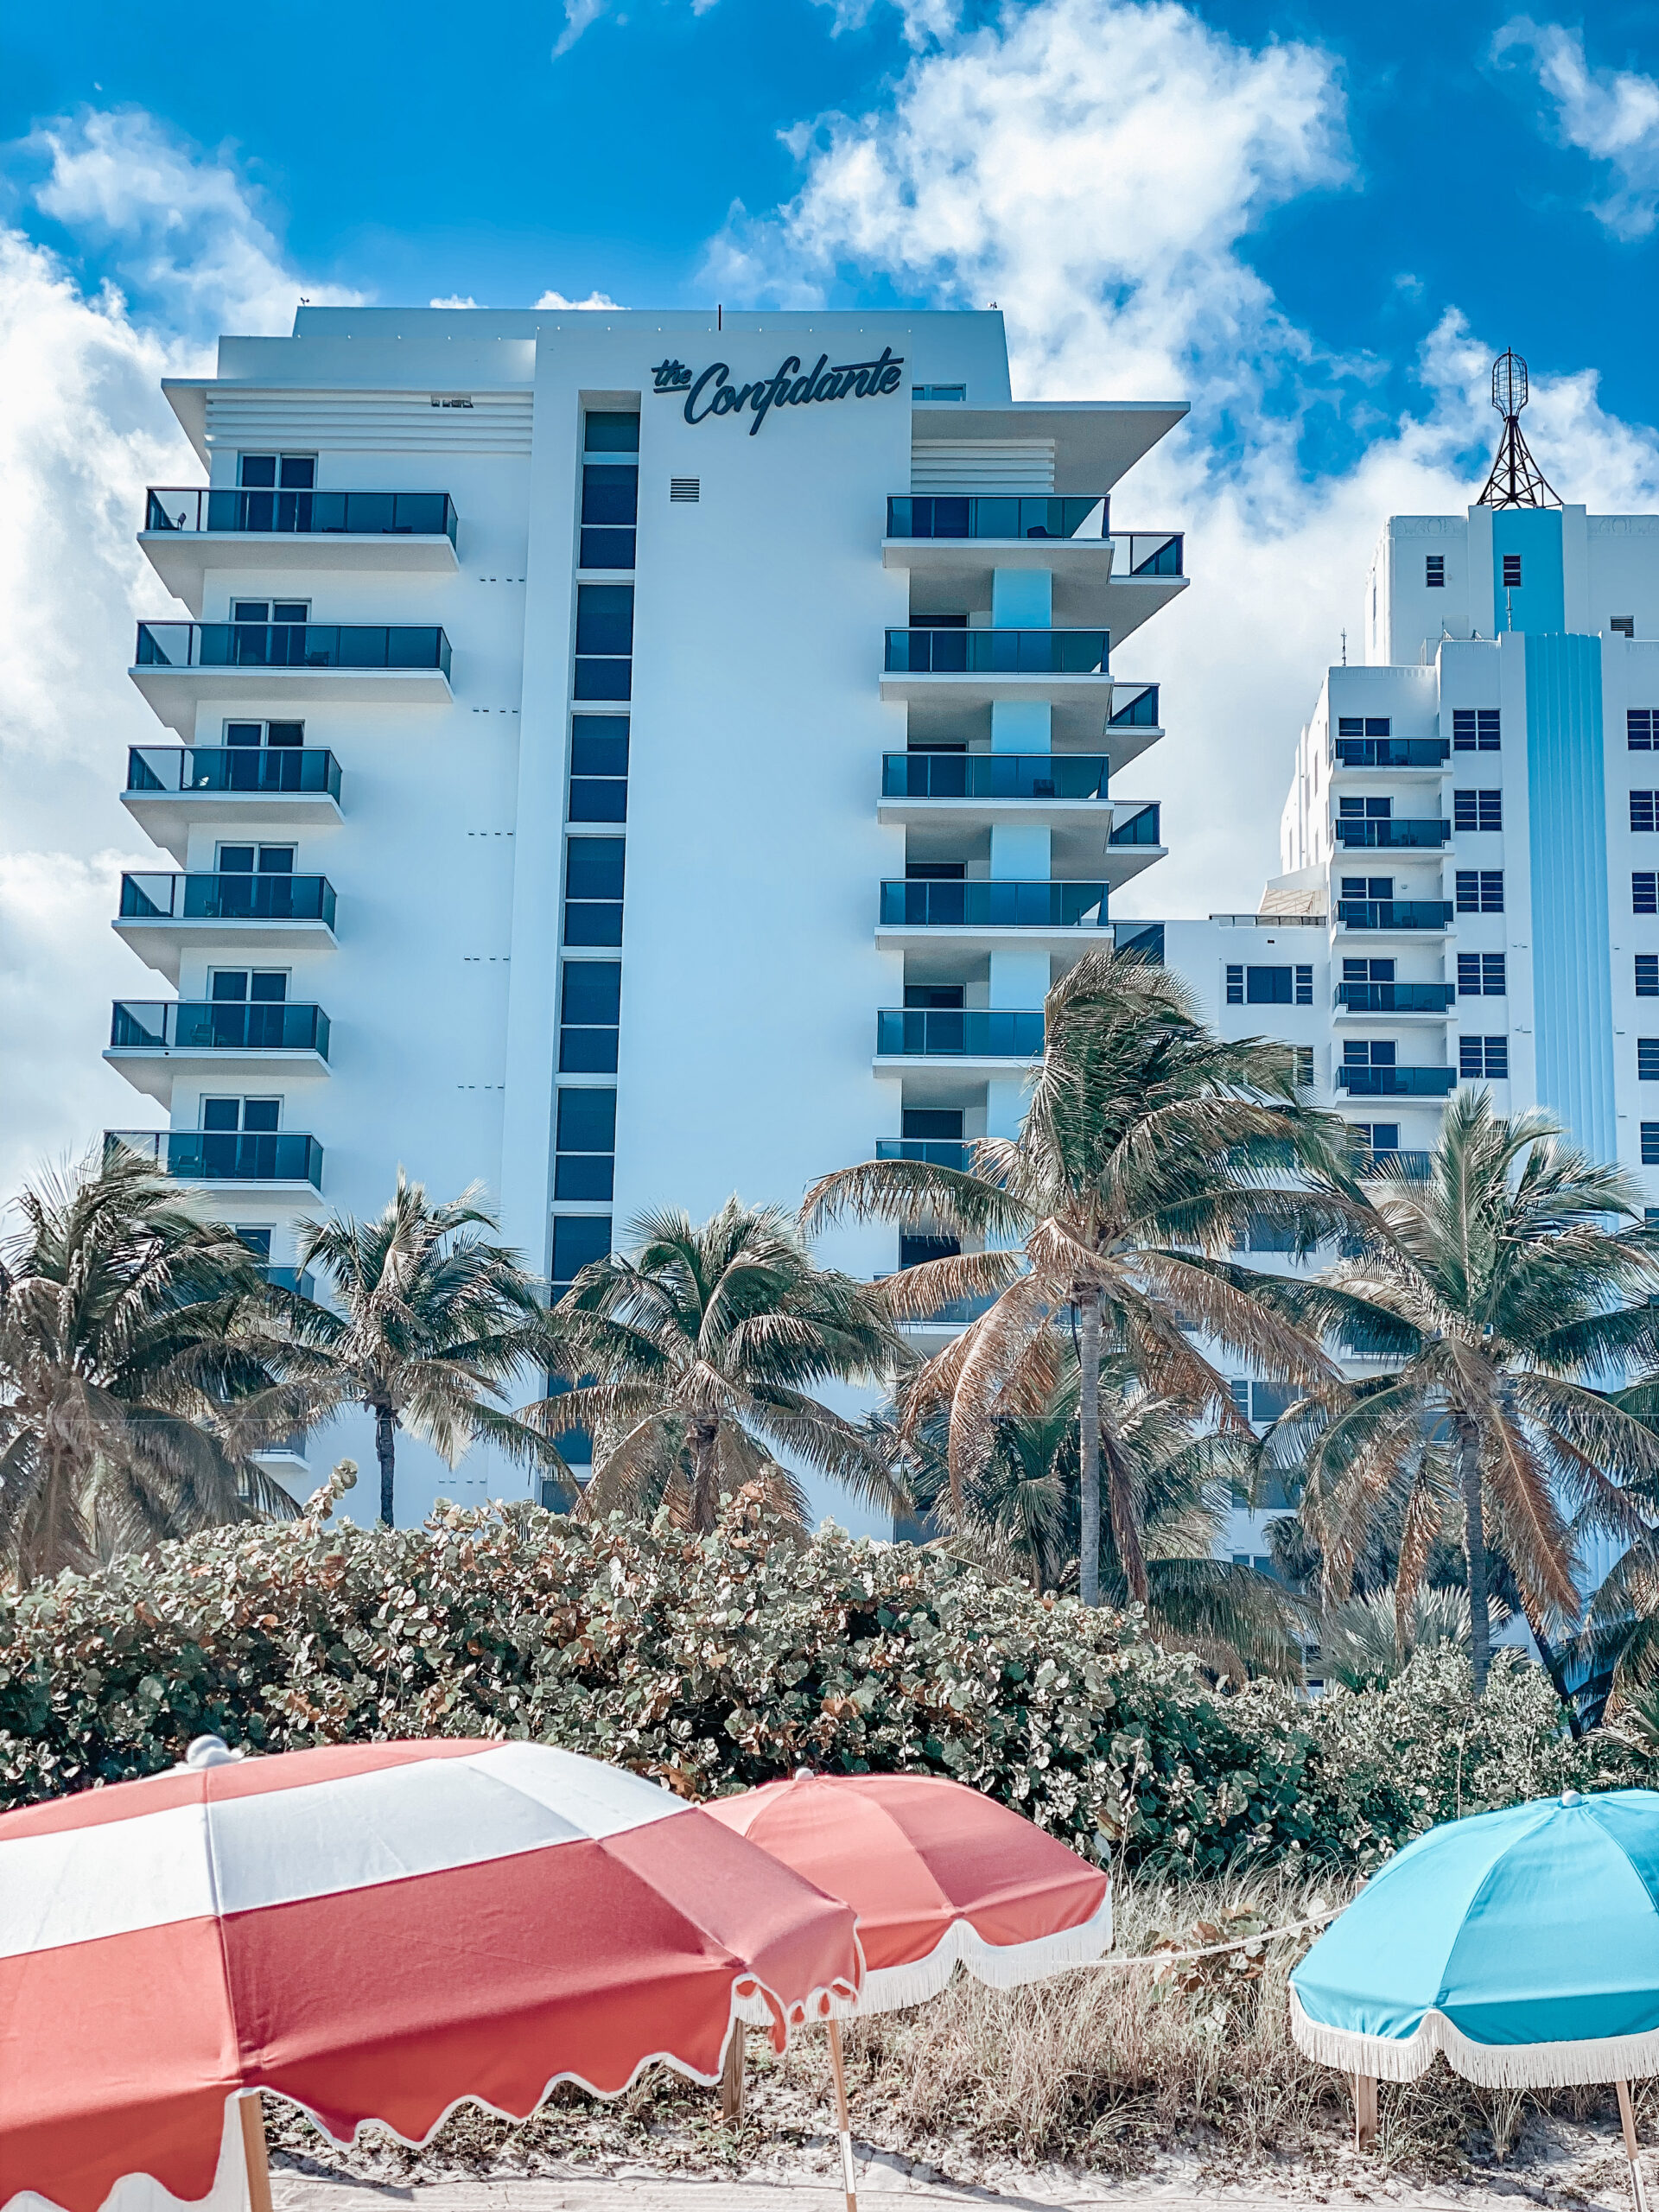 The Confidante Miami Beach Hotel